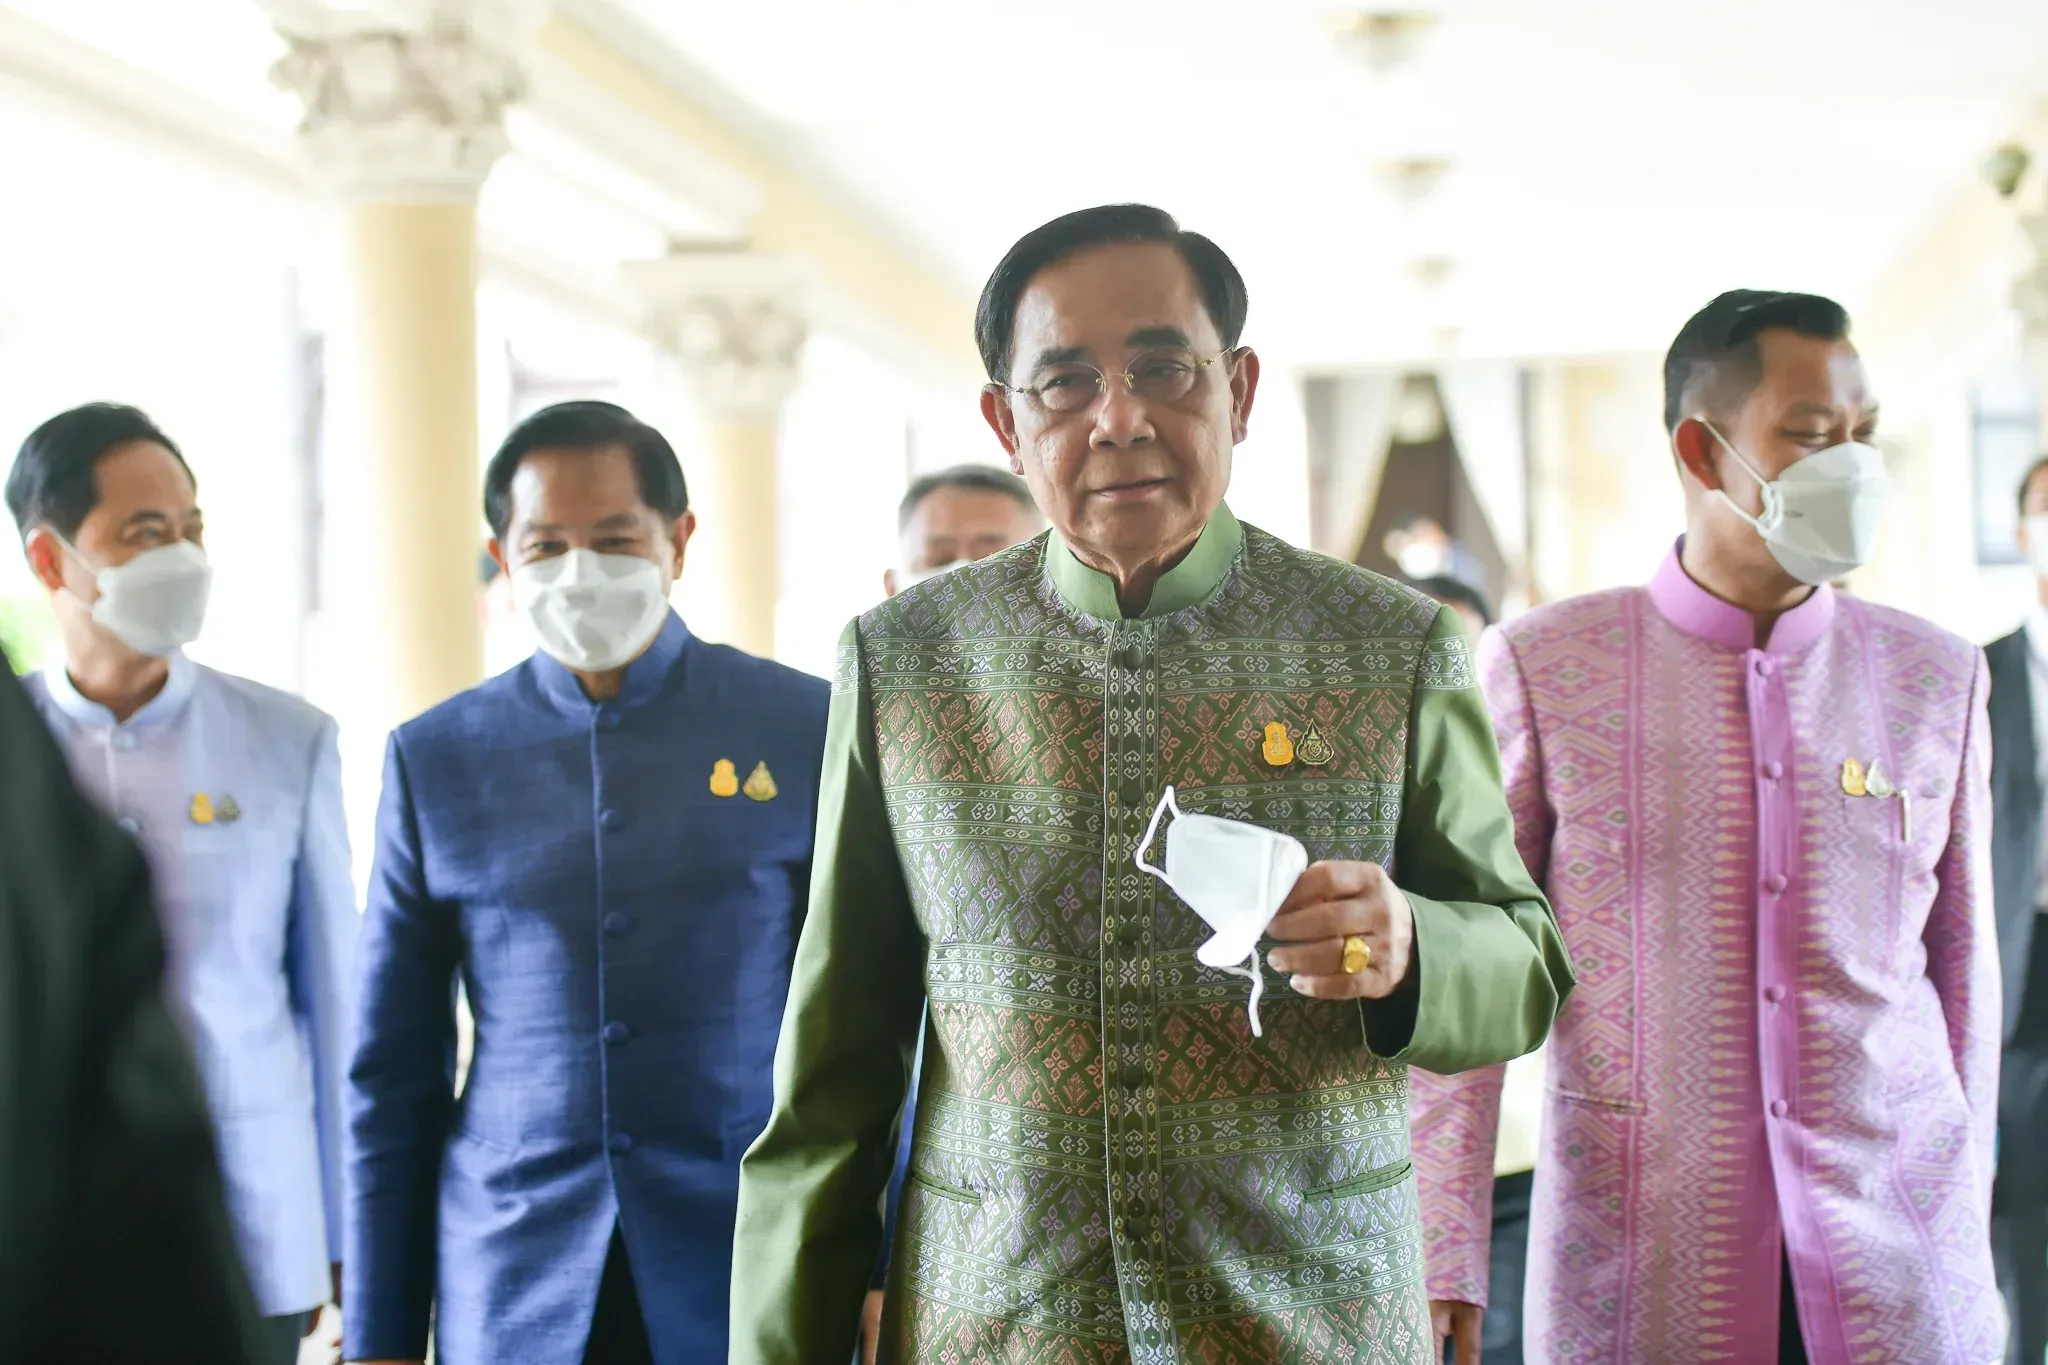 ရွေးကောက်ပွဲမှာ အရေးနိမ့်ခဲ့တဲ့နောက် ပြည်တွင်းမှာ စည်းလုံးမှု ရှိကြဖို့ ထိုင်းဝန်ကြီးချုပ် တိုက်တွန်း